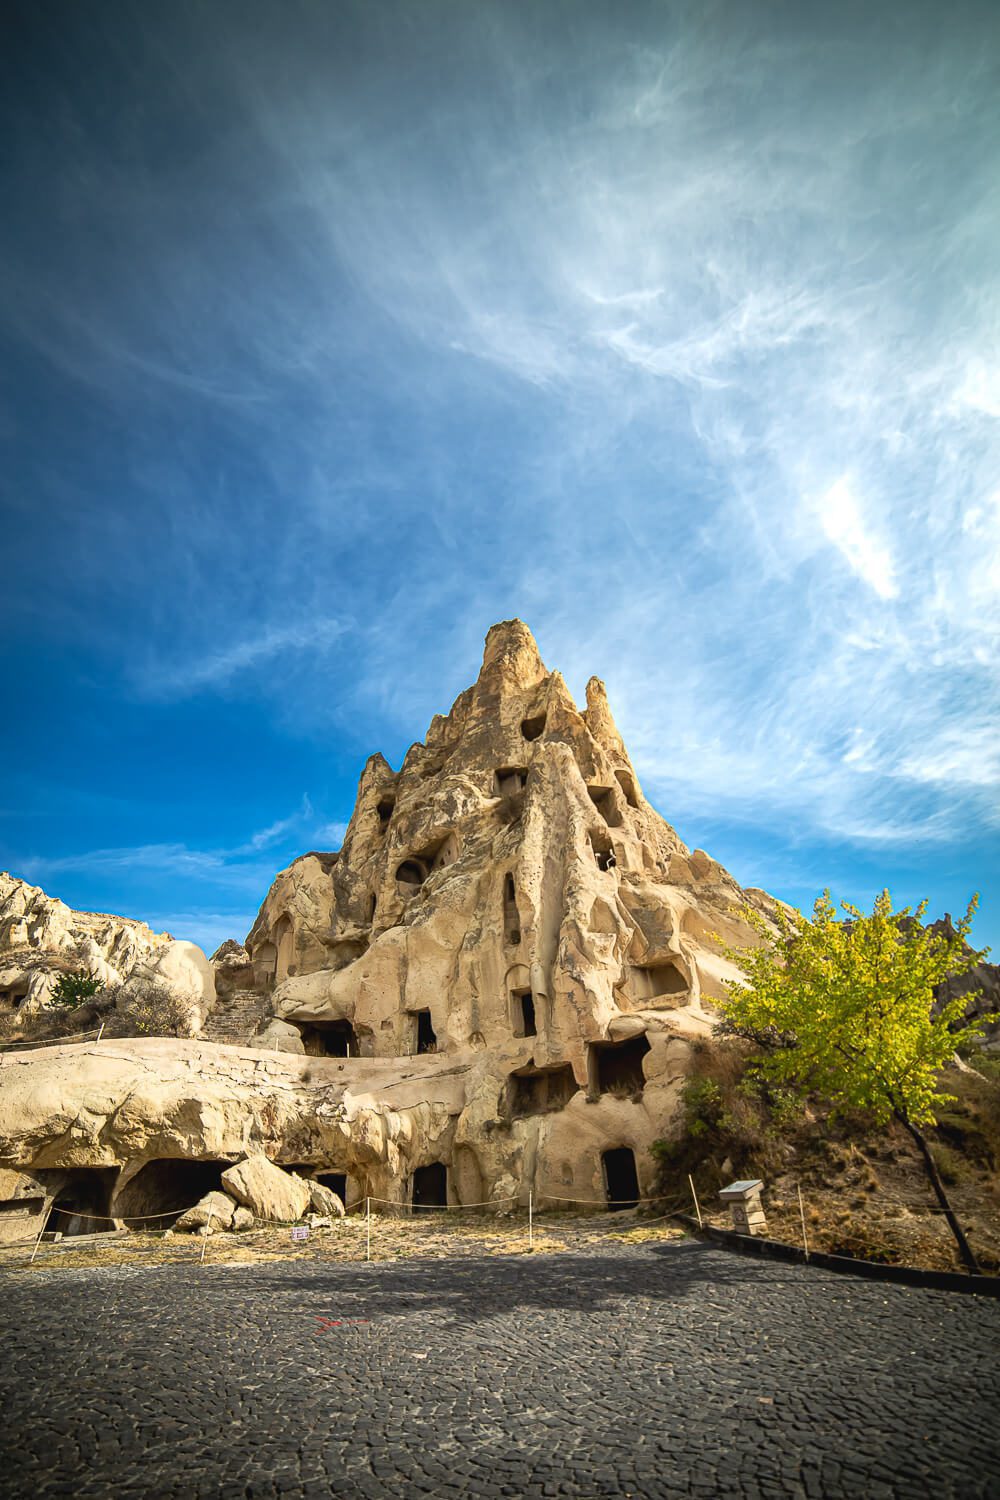 The Zelve Open Air Museum in Cappadocia<br>
